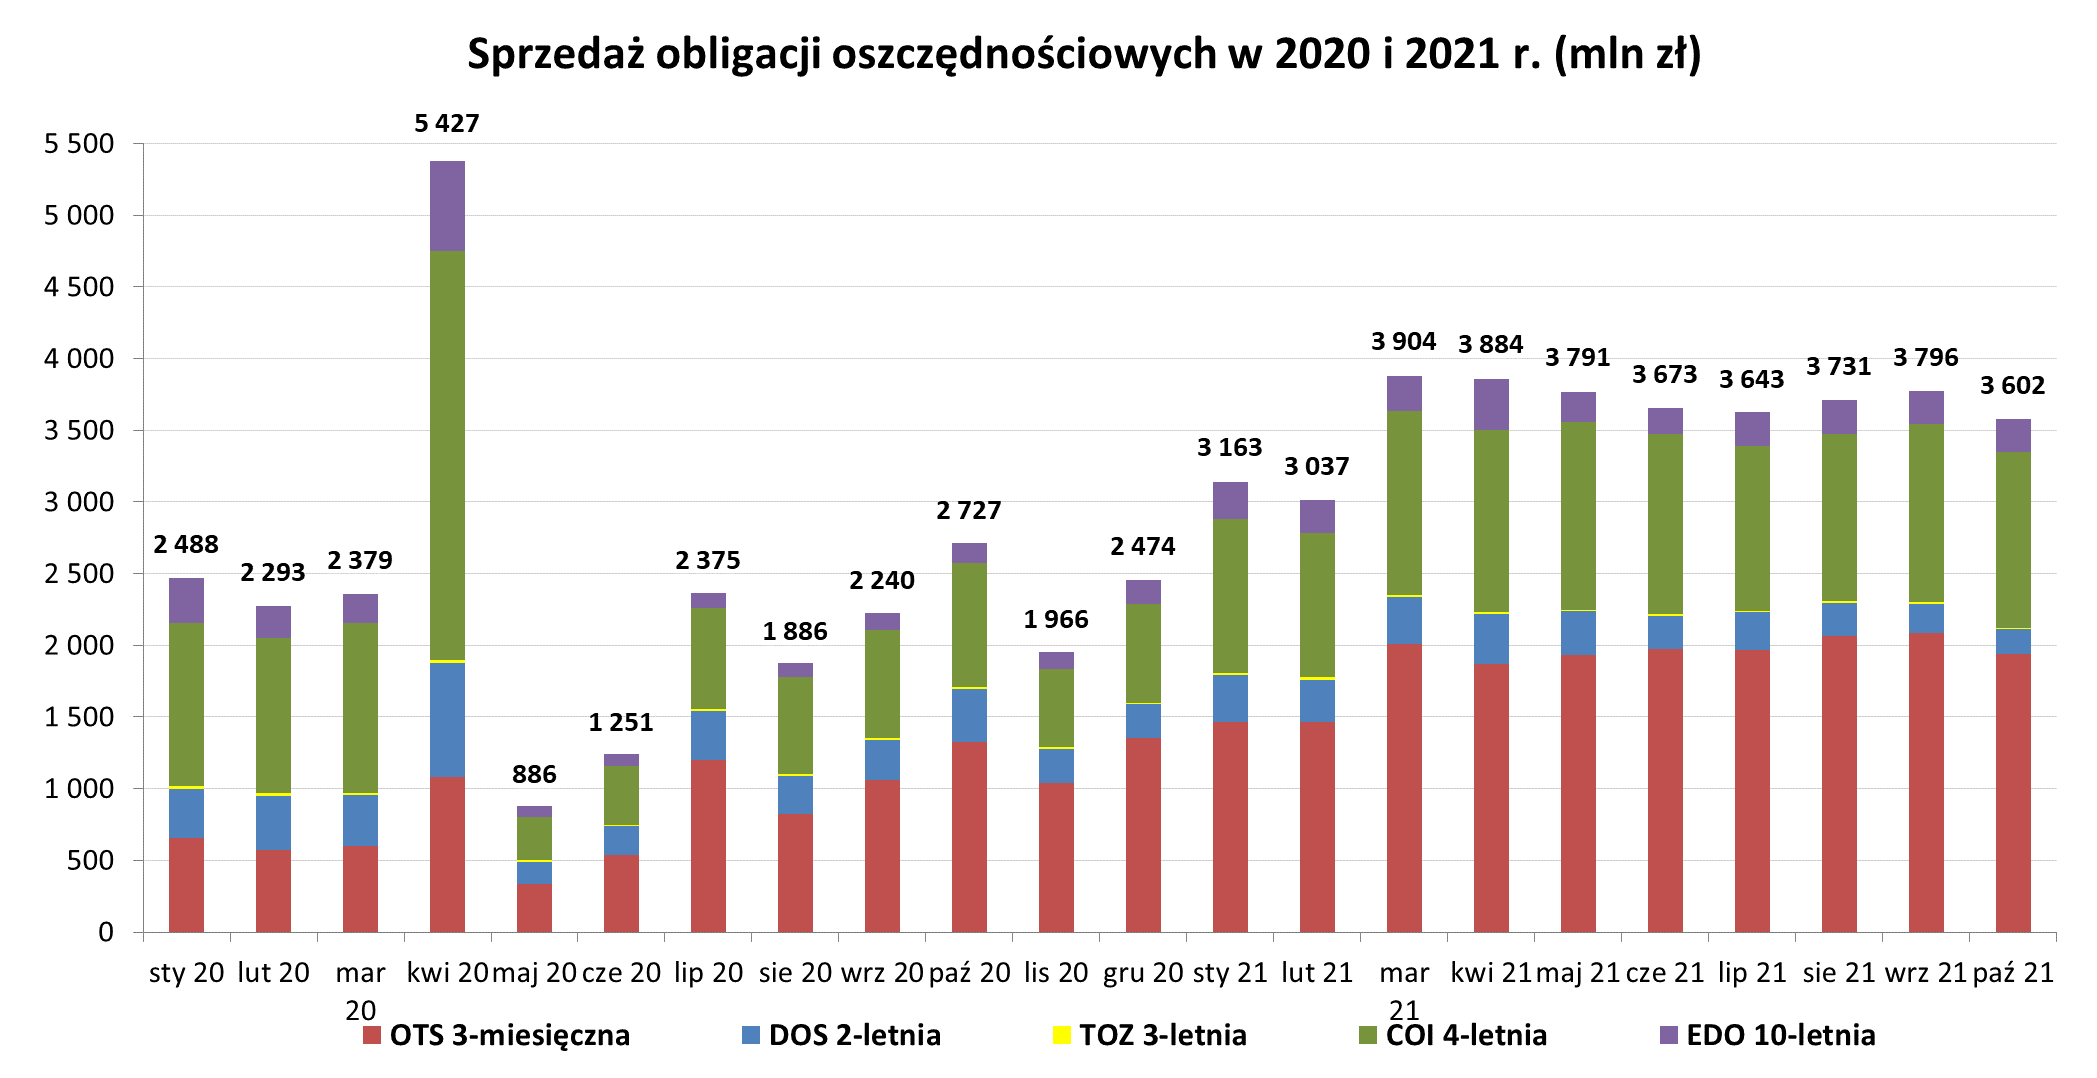 Grafika słupkowa przedstawiająca sprzedaż obligacji oszczędnościowych w 2020 i 2021 r (mln zł) w październiku 2021 r.